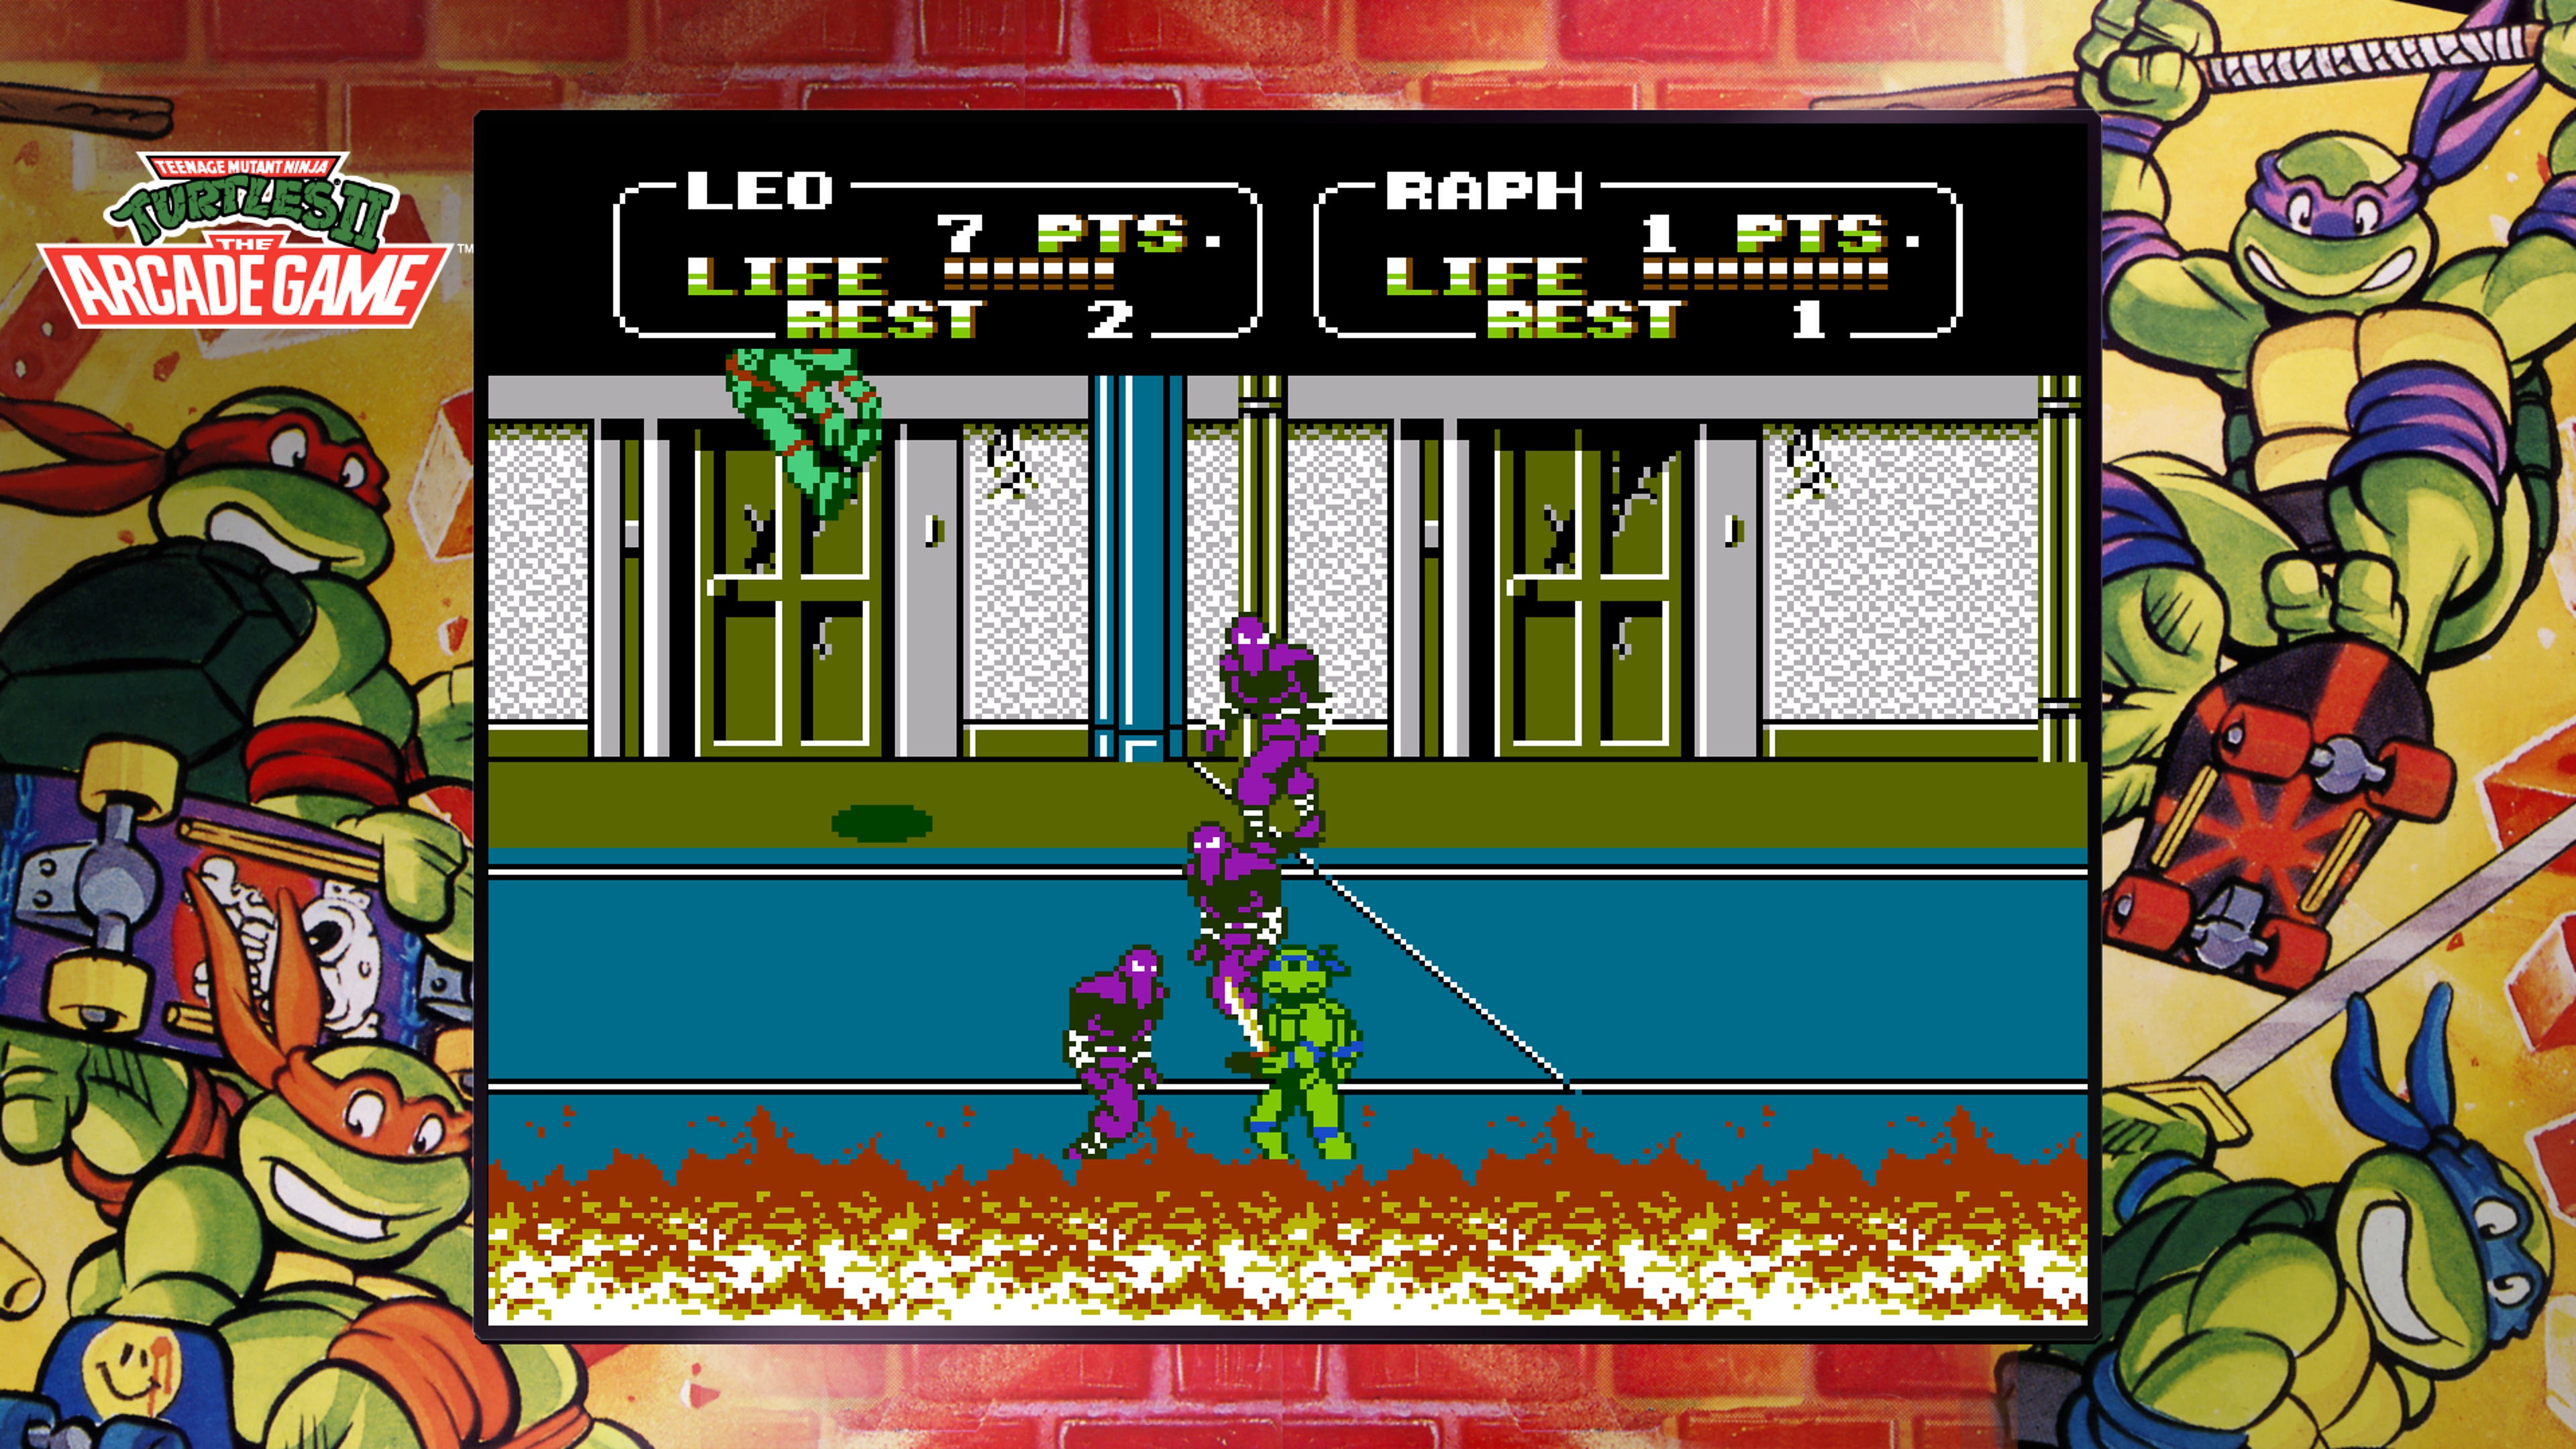 Colección Teenage Mutant Ninja Turtles: captura de pantalla de The Arcade Game que muestra a Leonardo peleando contra el Clan del Pie